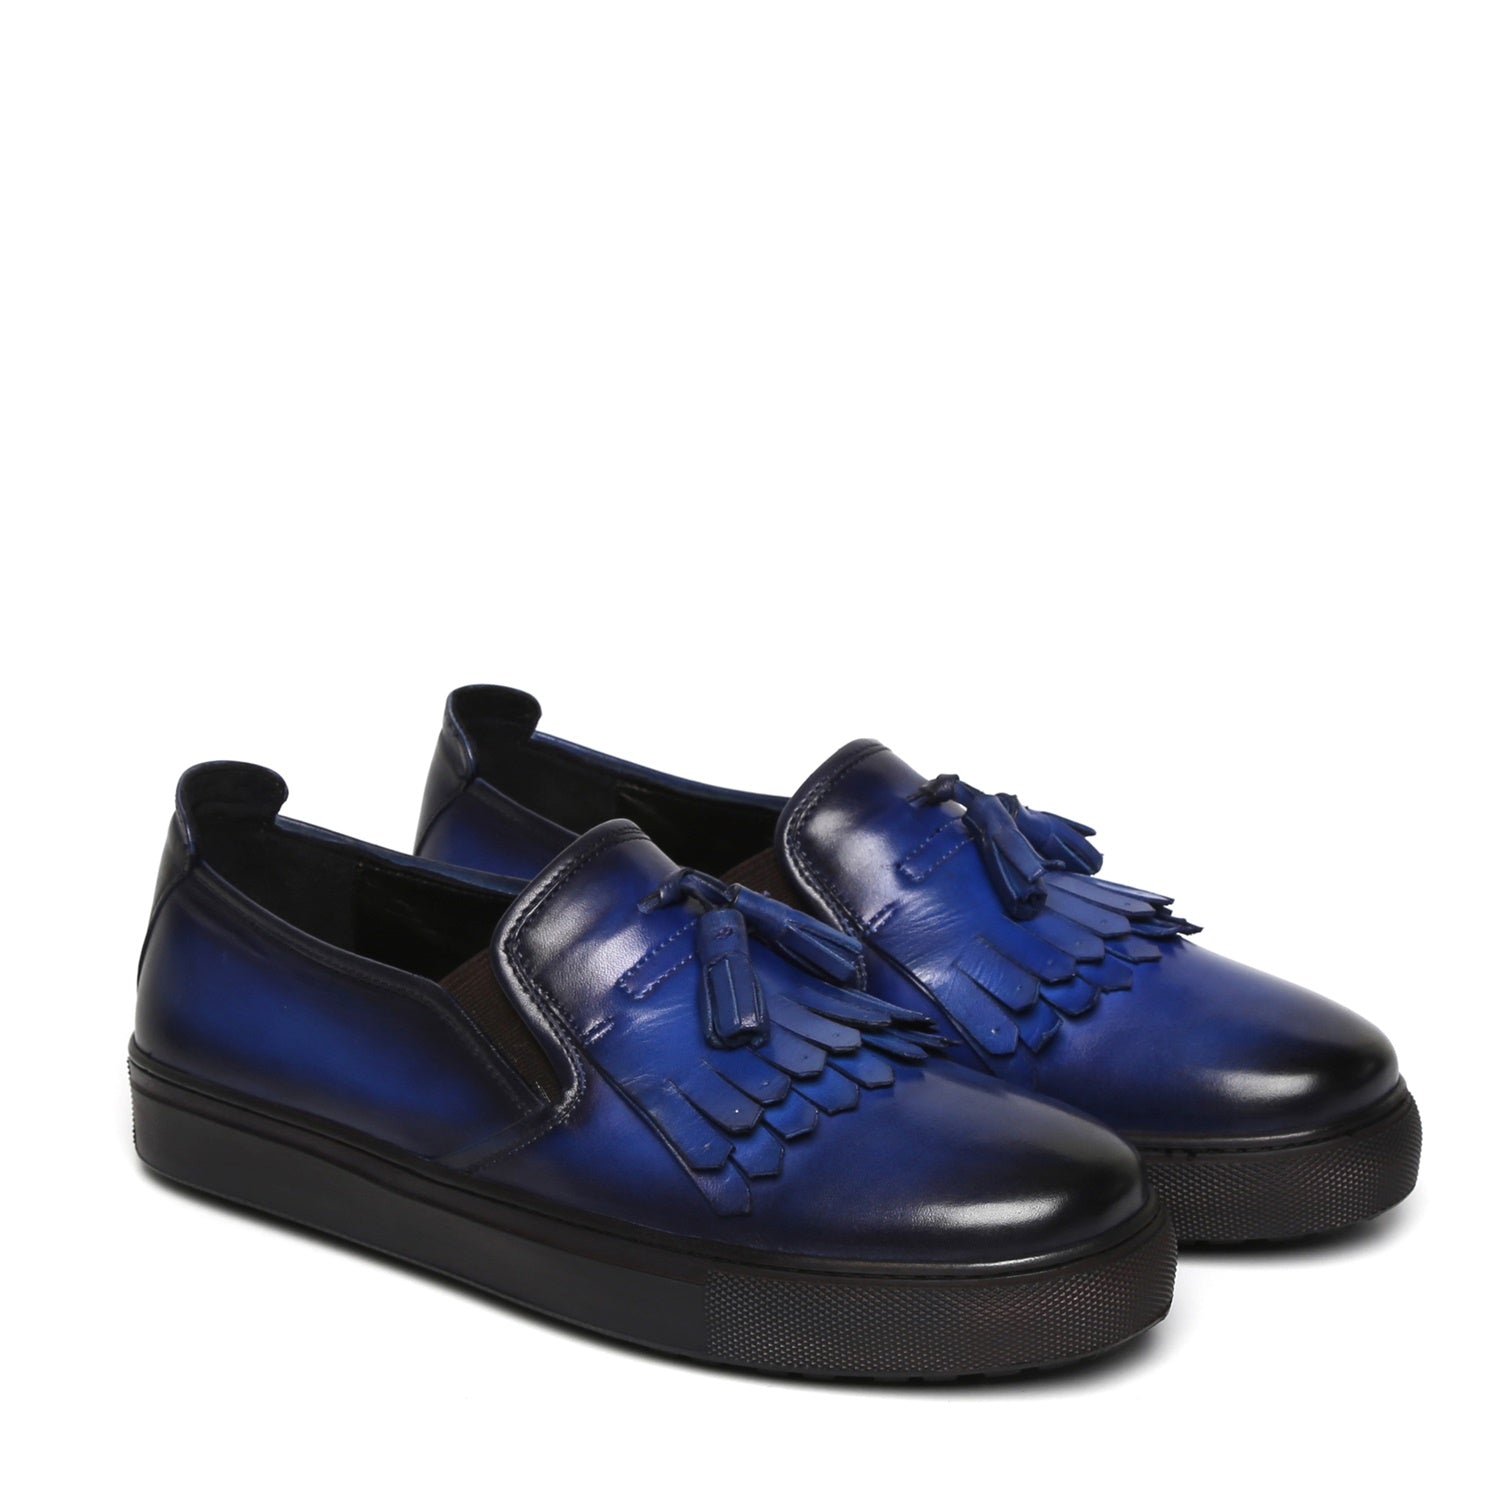 Tassel Fringes Navy Blue Leather Slip-On Men Sneakers By Brune & Bareskin